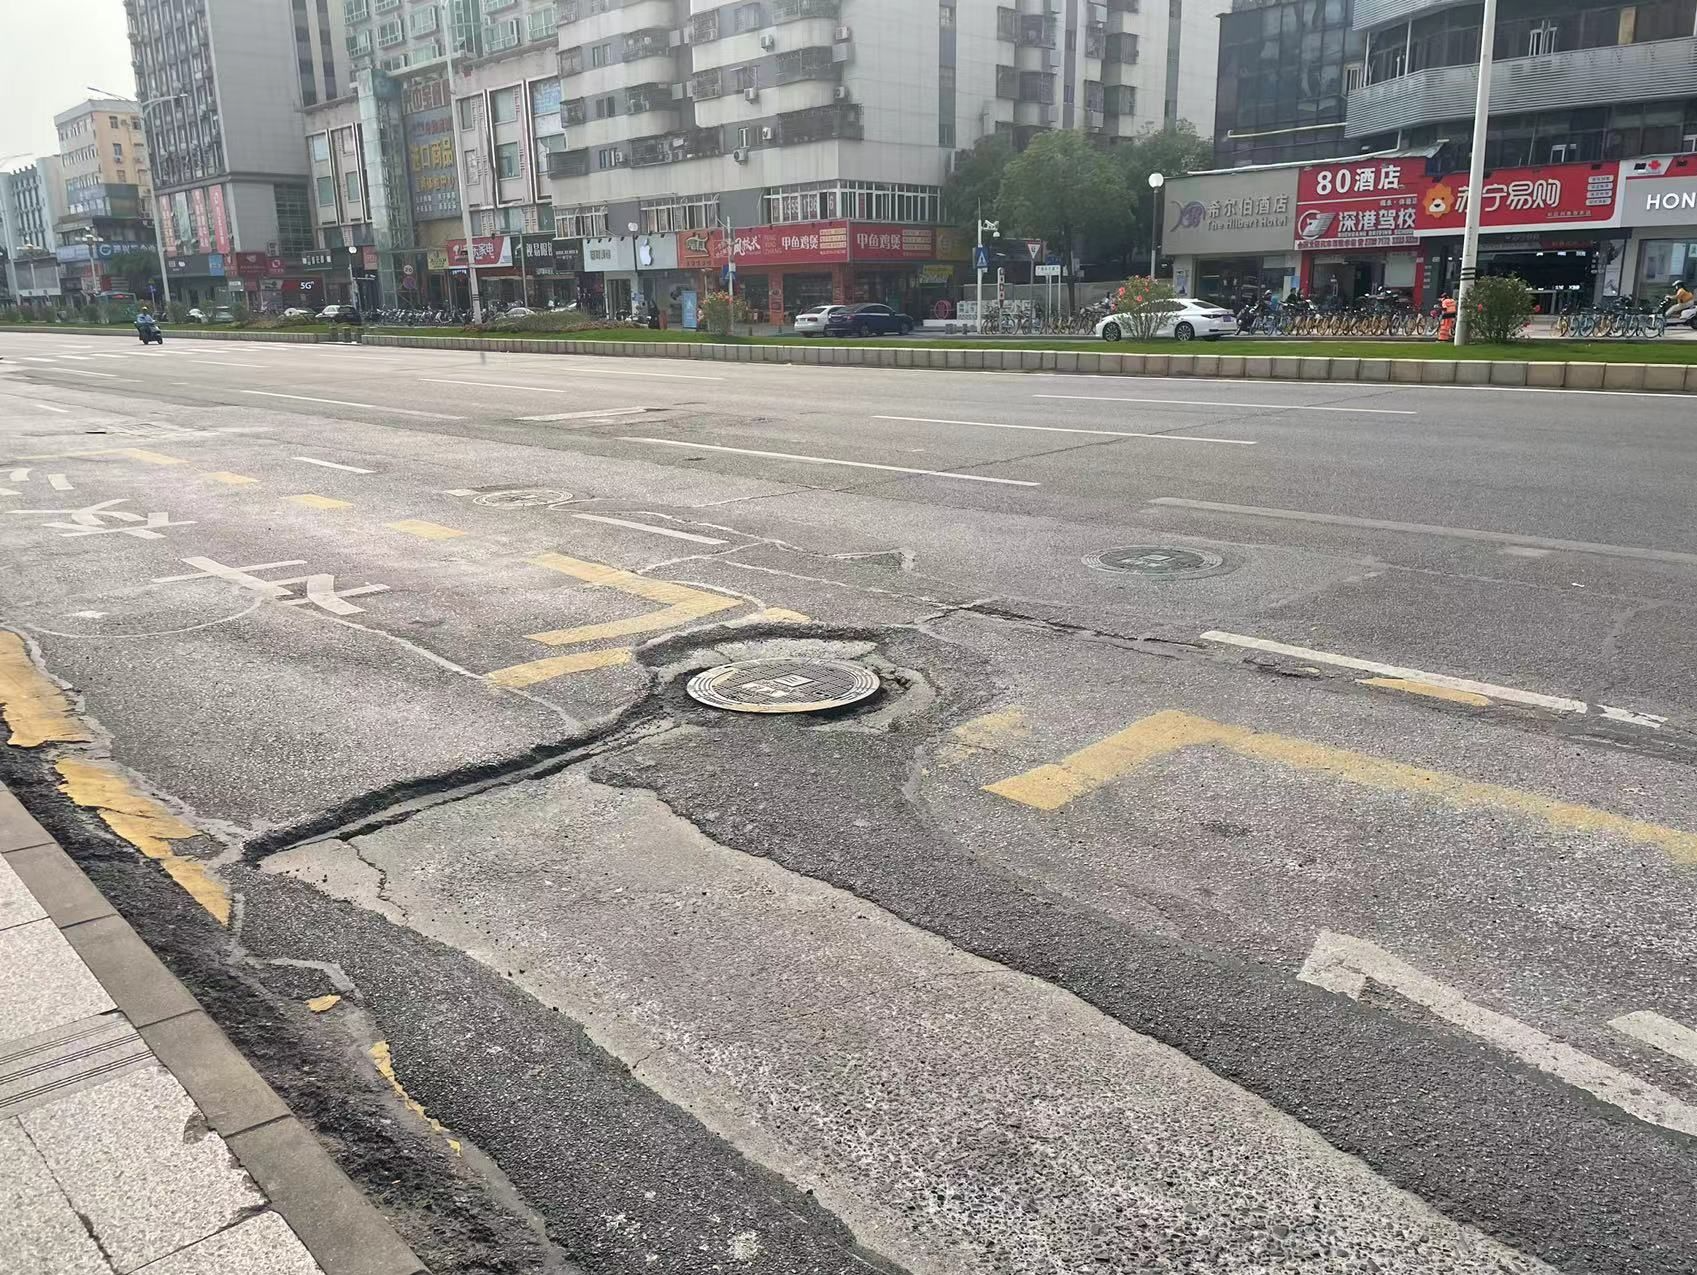 井盖不平，路面坑洼……深圳市民吐槽多处道路“行路难”，记者实地走访